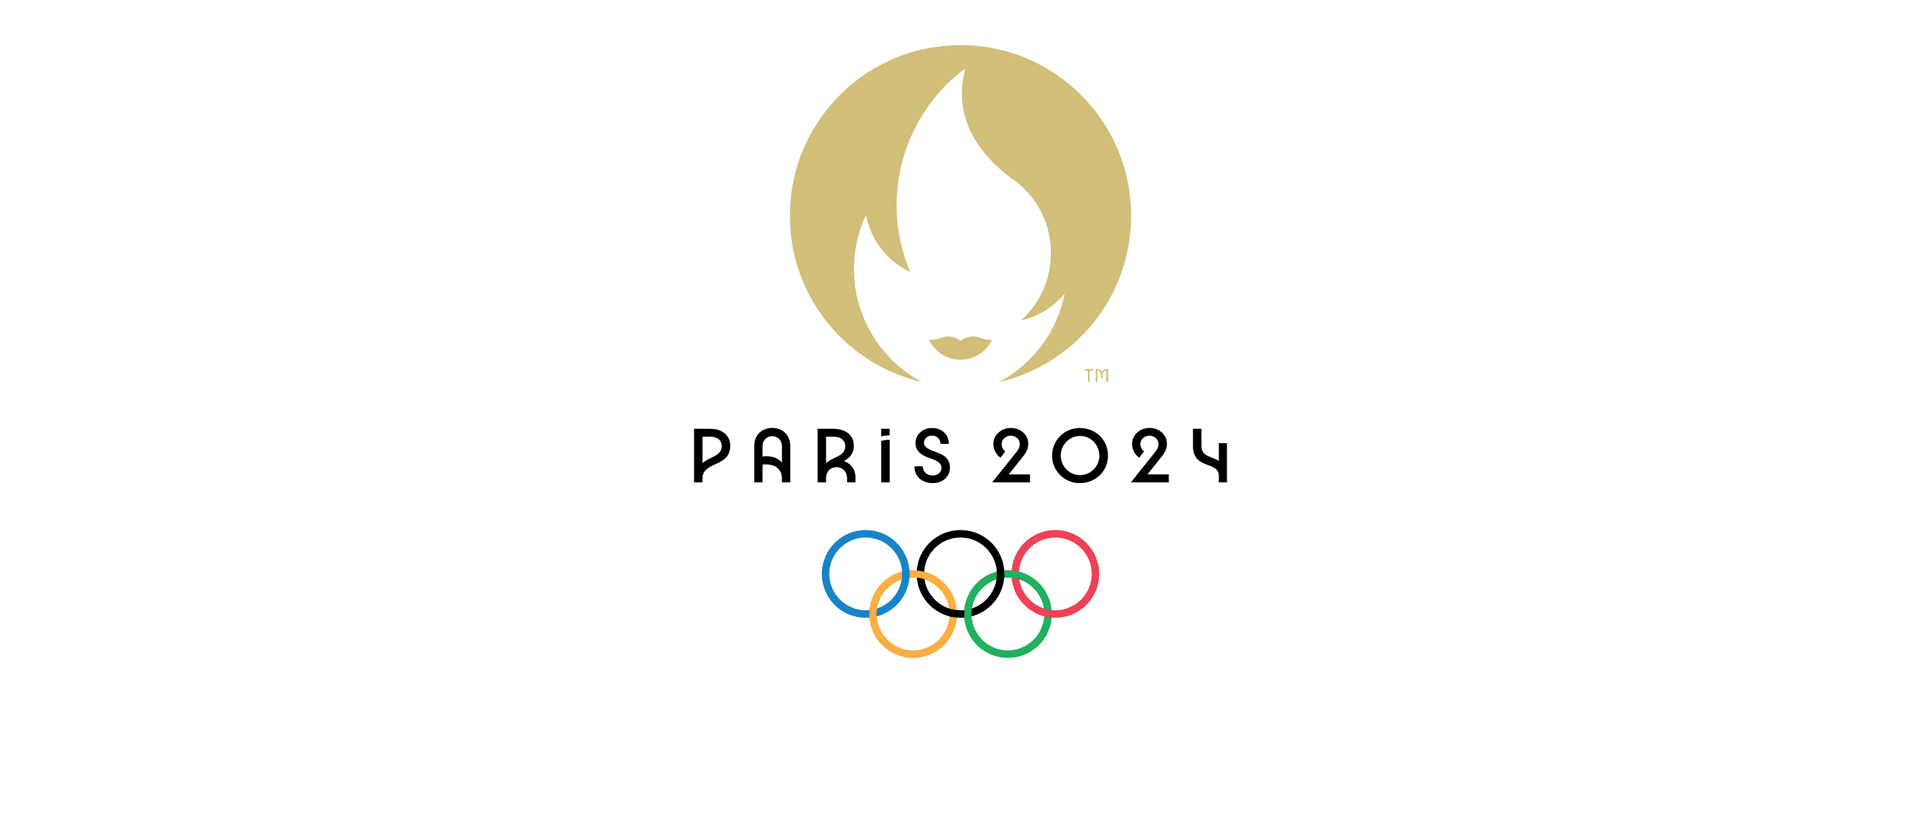 パリ2024 | オリンピック競技大会